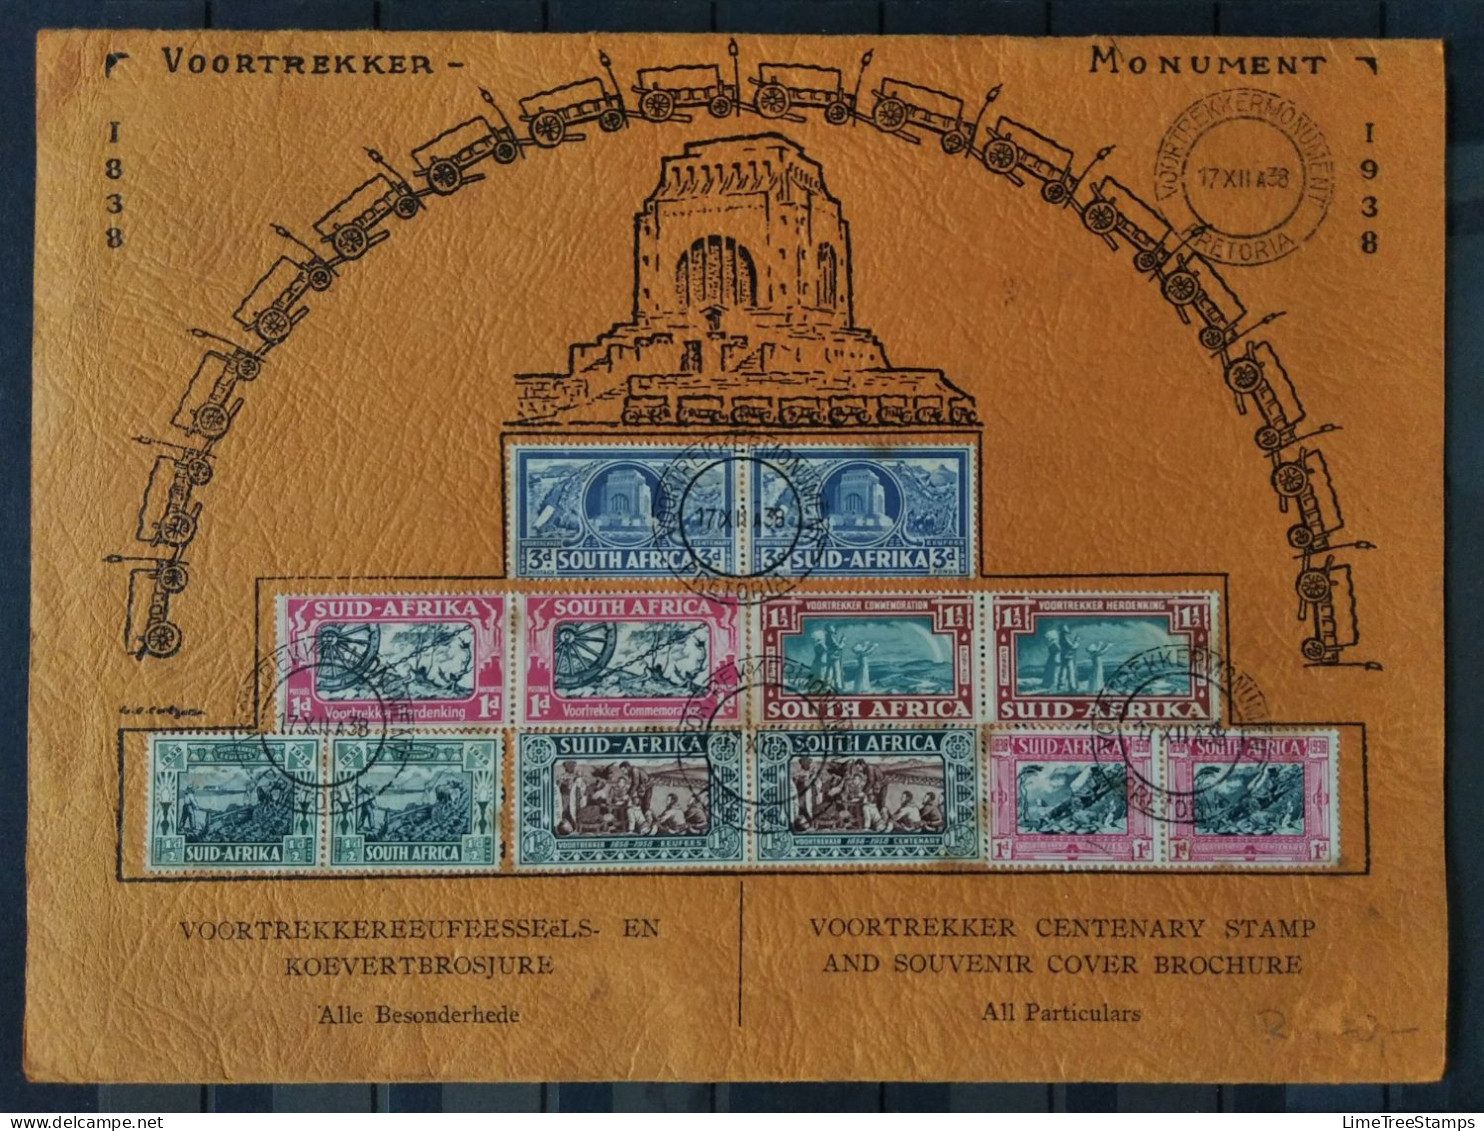 SOUTH AFRICA Original 1938 Voortrekker Centenary Stamp And Souvenir Cover Brochure With Program - Briefe U. Dokumente